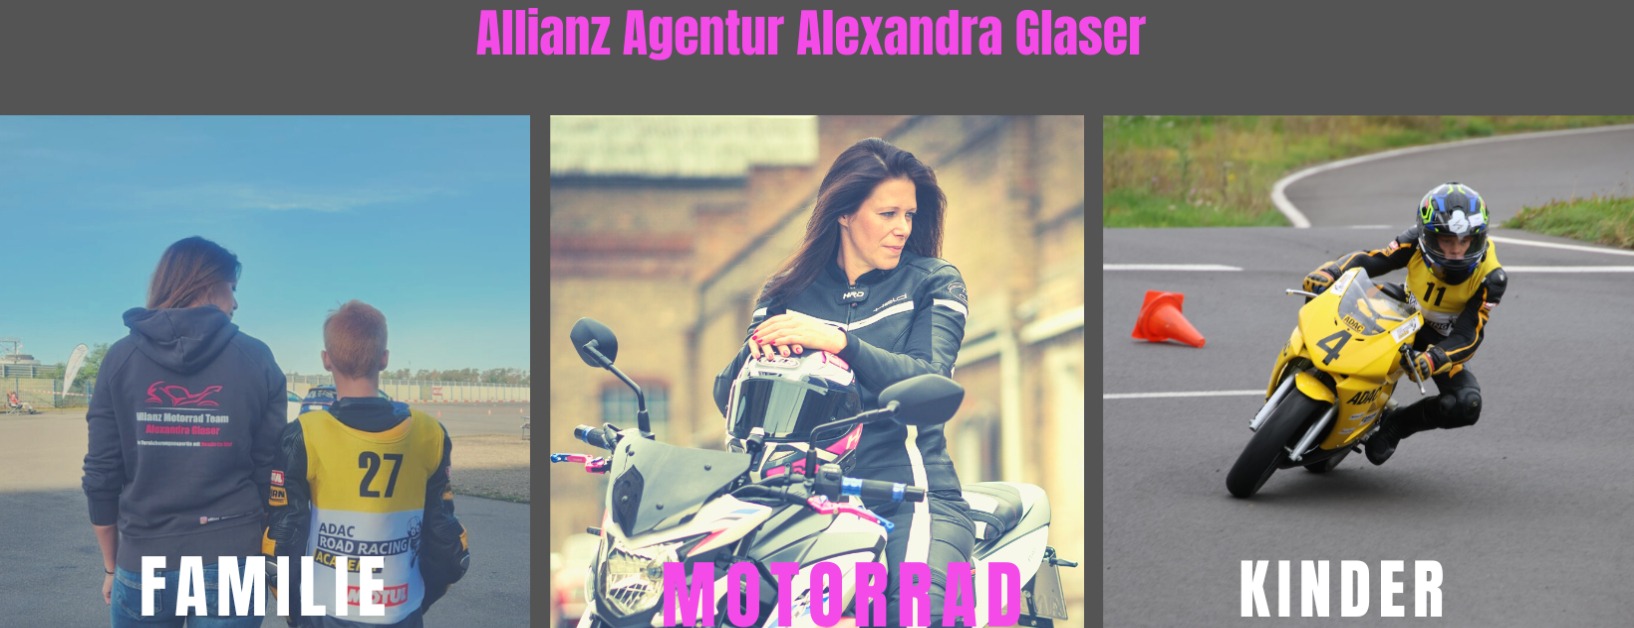 Allianz Versicherung Alexandra Glaser Ellerstadt - Motorrad, Allianz, Frauenpower, Biker, Familie